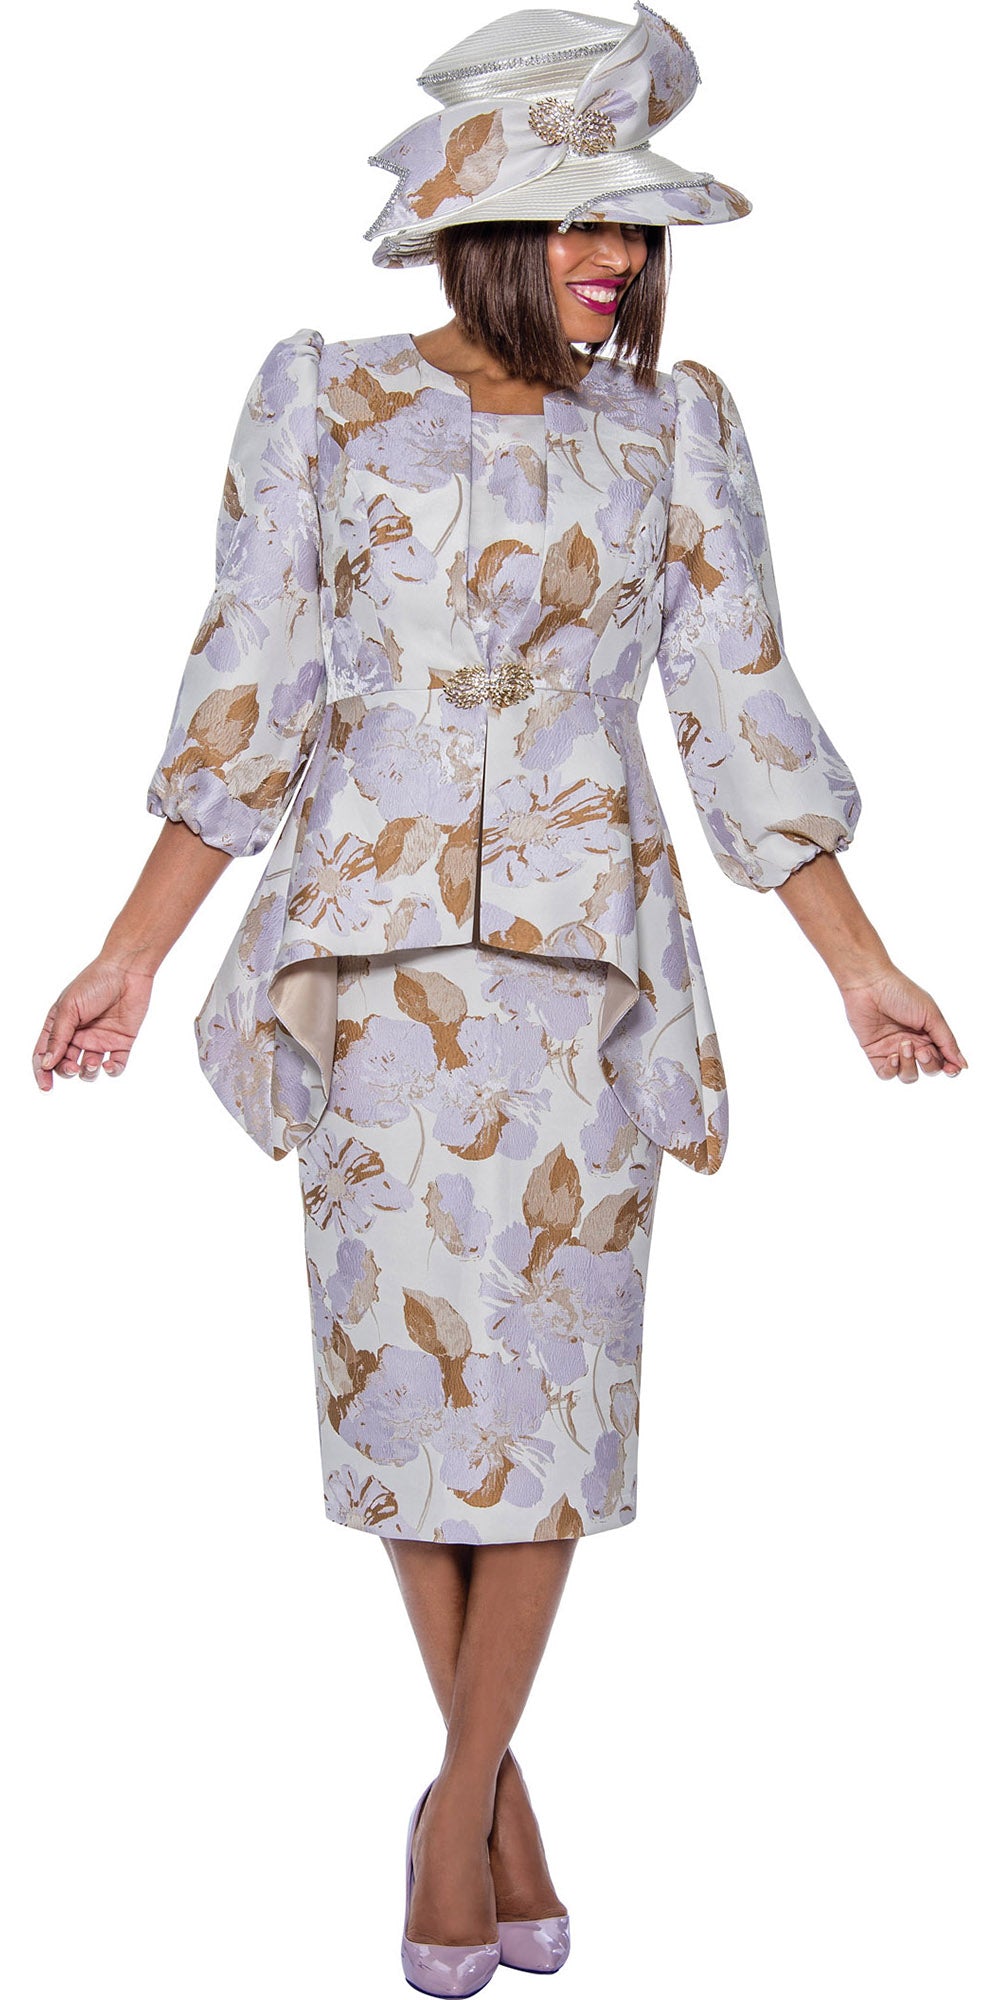 Divine Queen - DQ2083 - 3PC Floral Print Skirt Suit